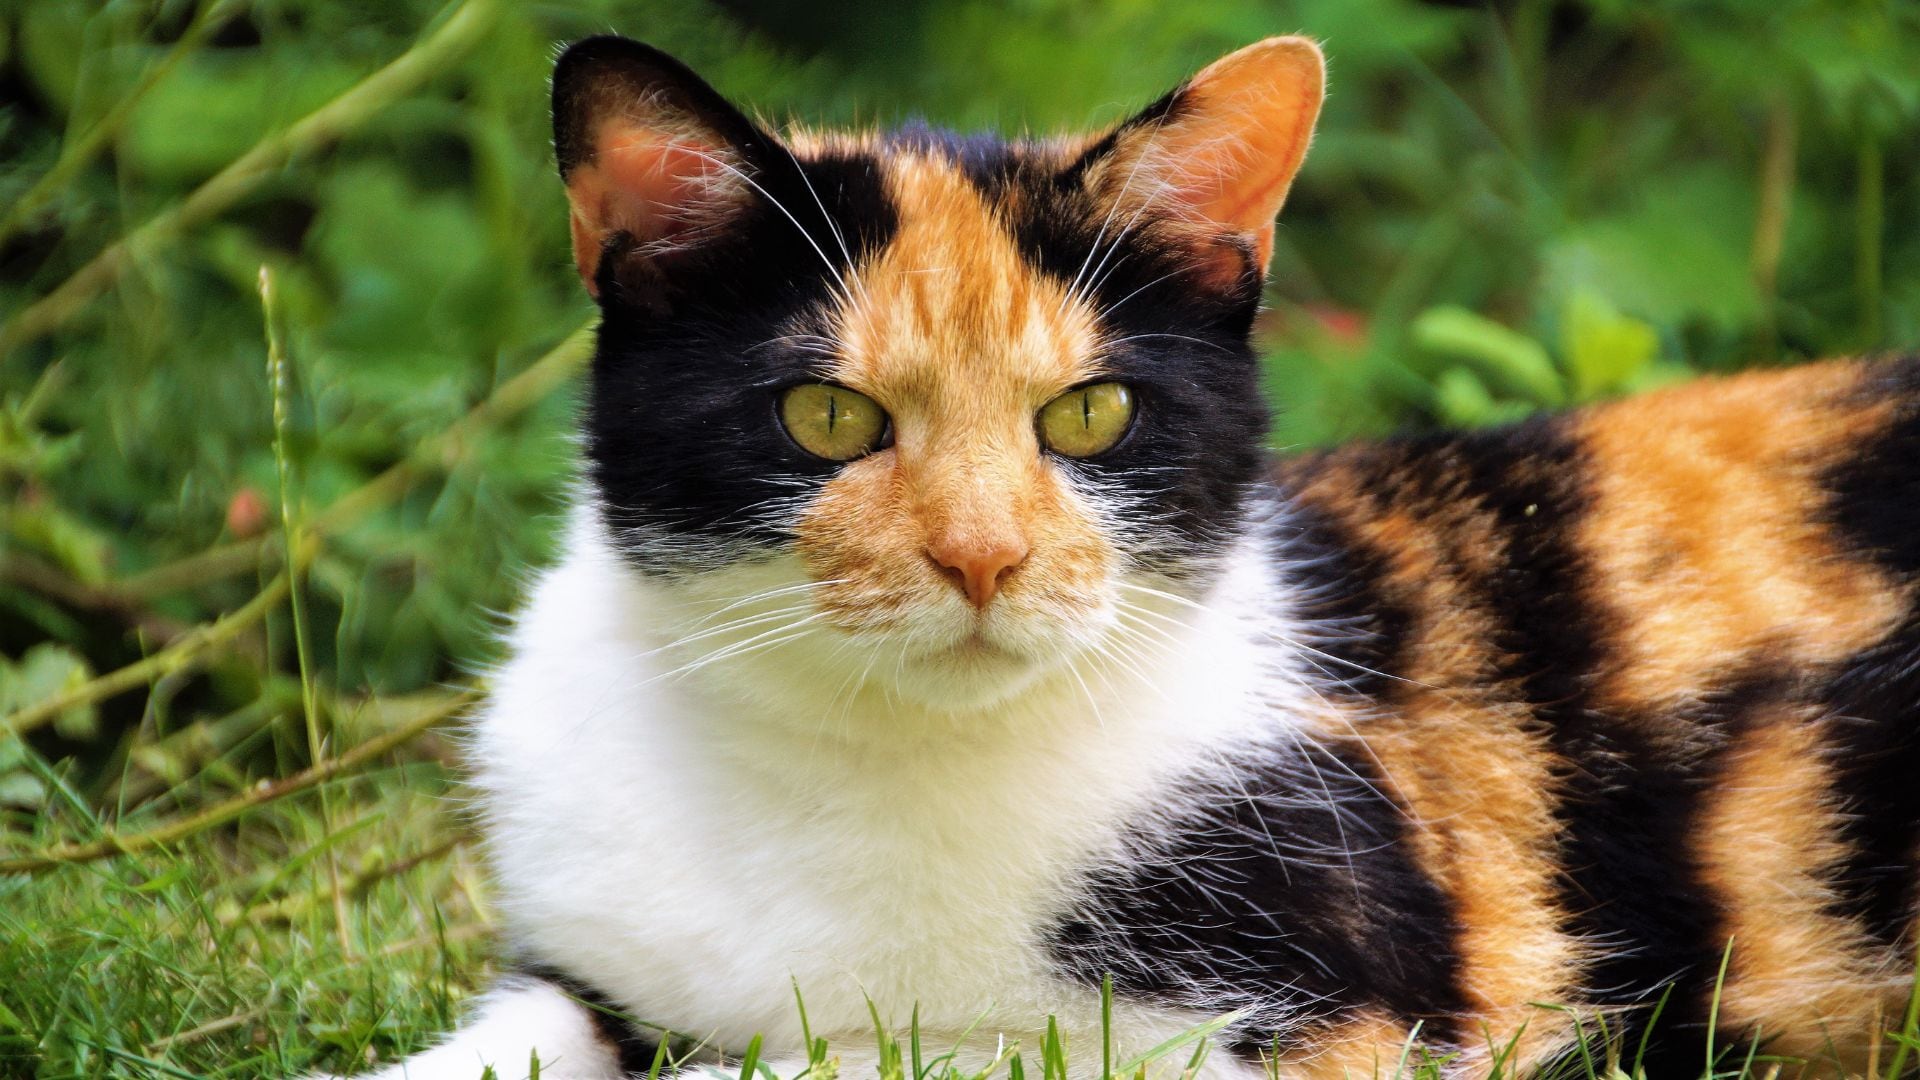 Mientras que los gatos naranjas son mayoritariamente machos, los gatos tricolores son casi exclusivamente femeninos.